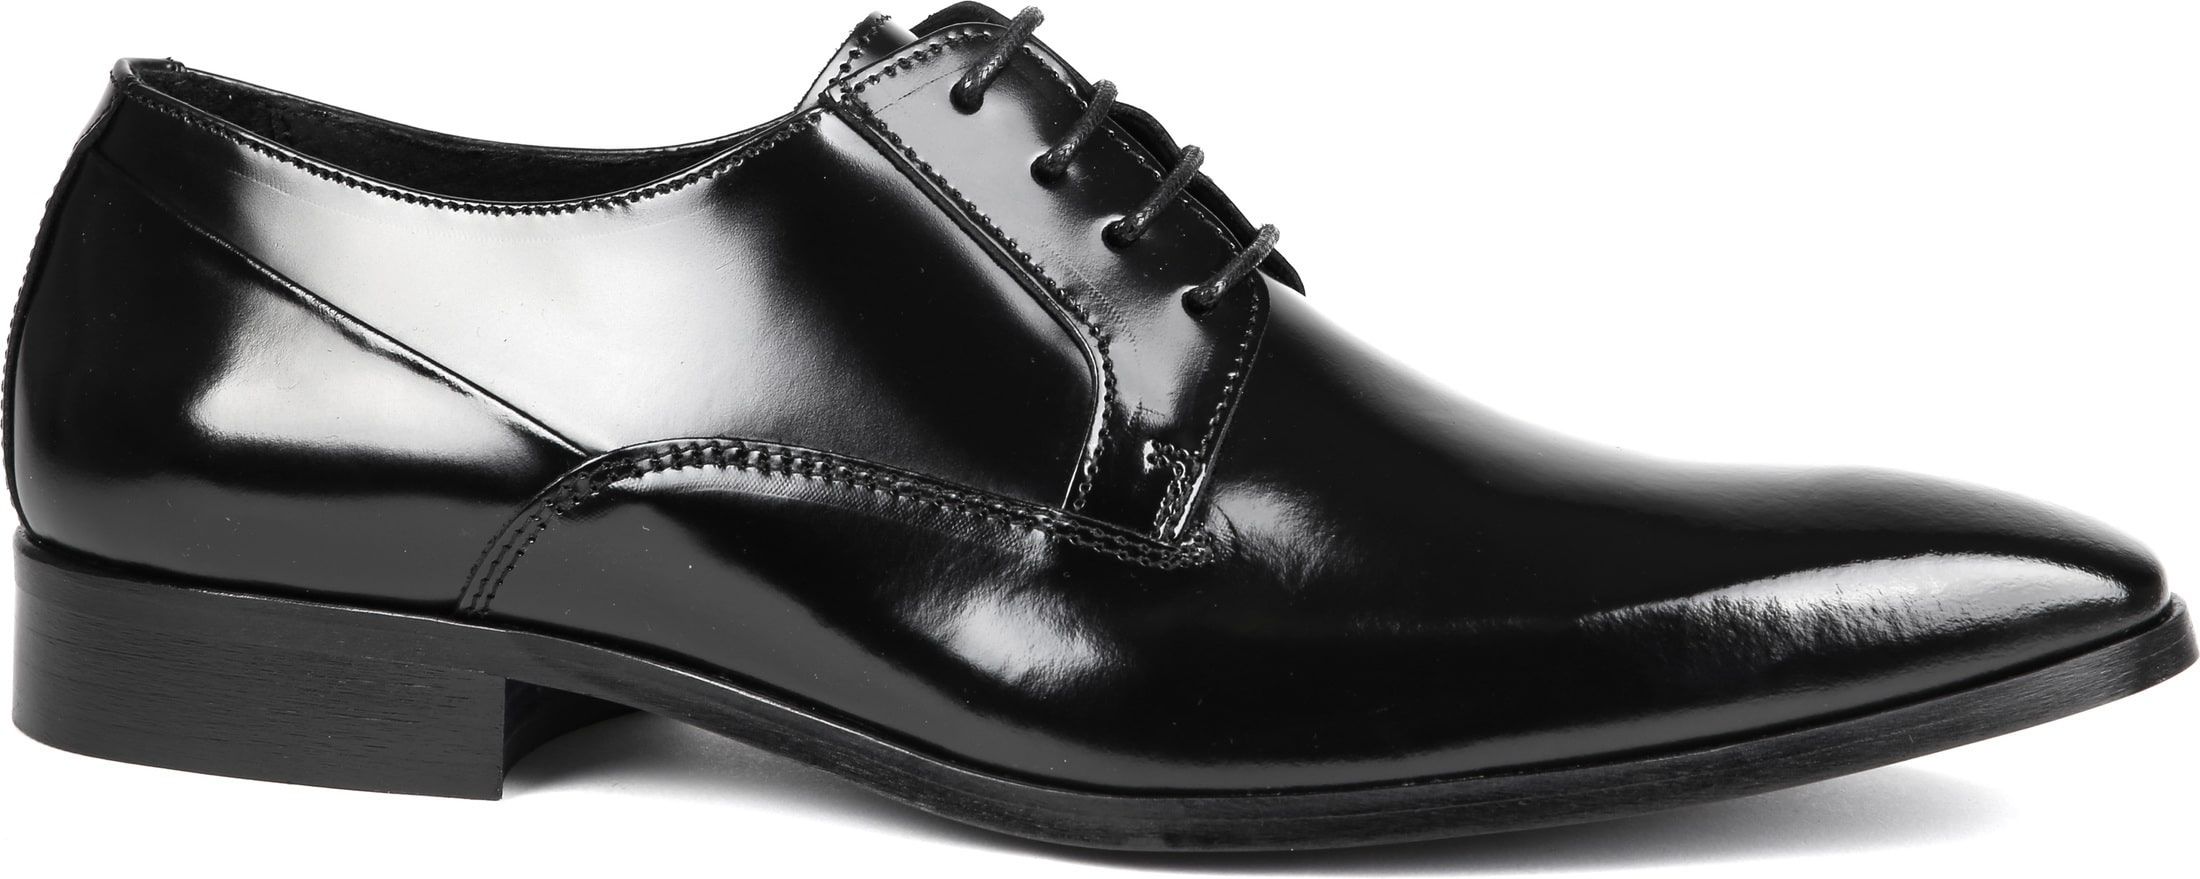 Suitable Lacquer Shoes Black size 7.5